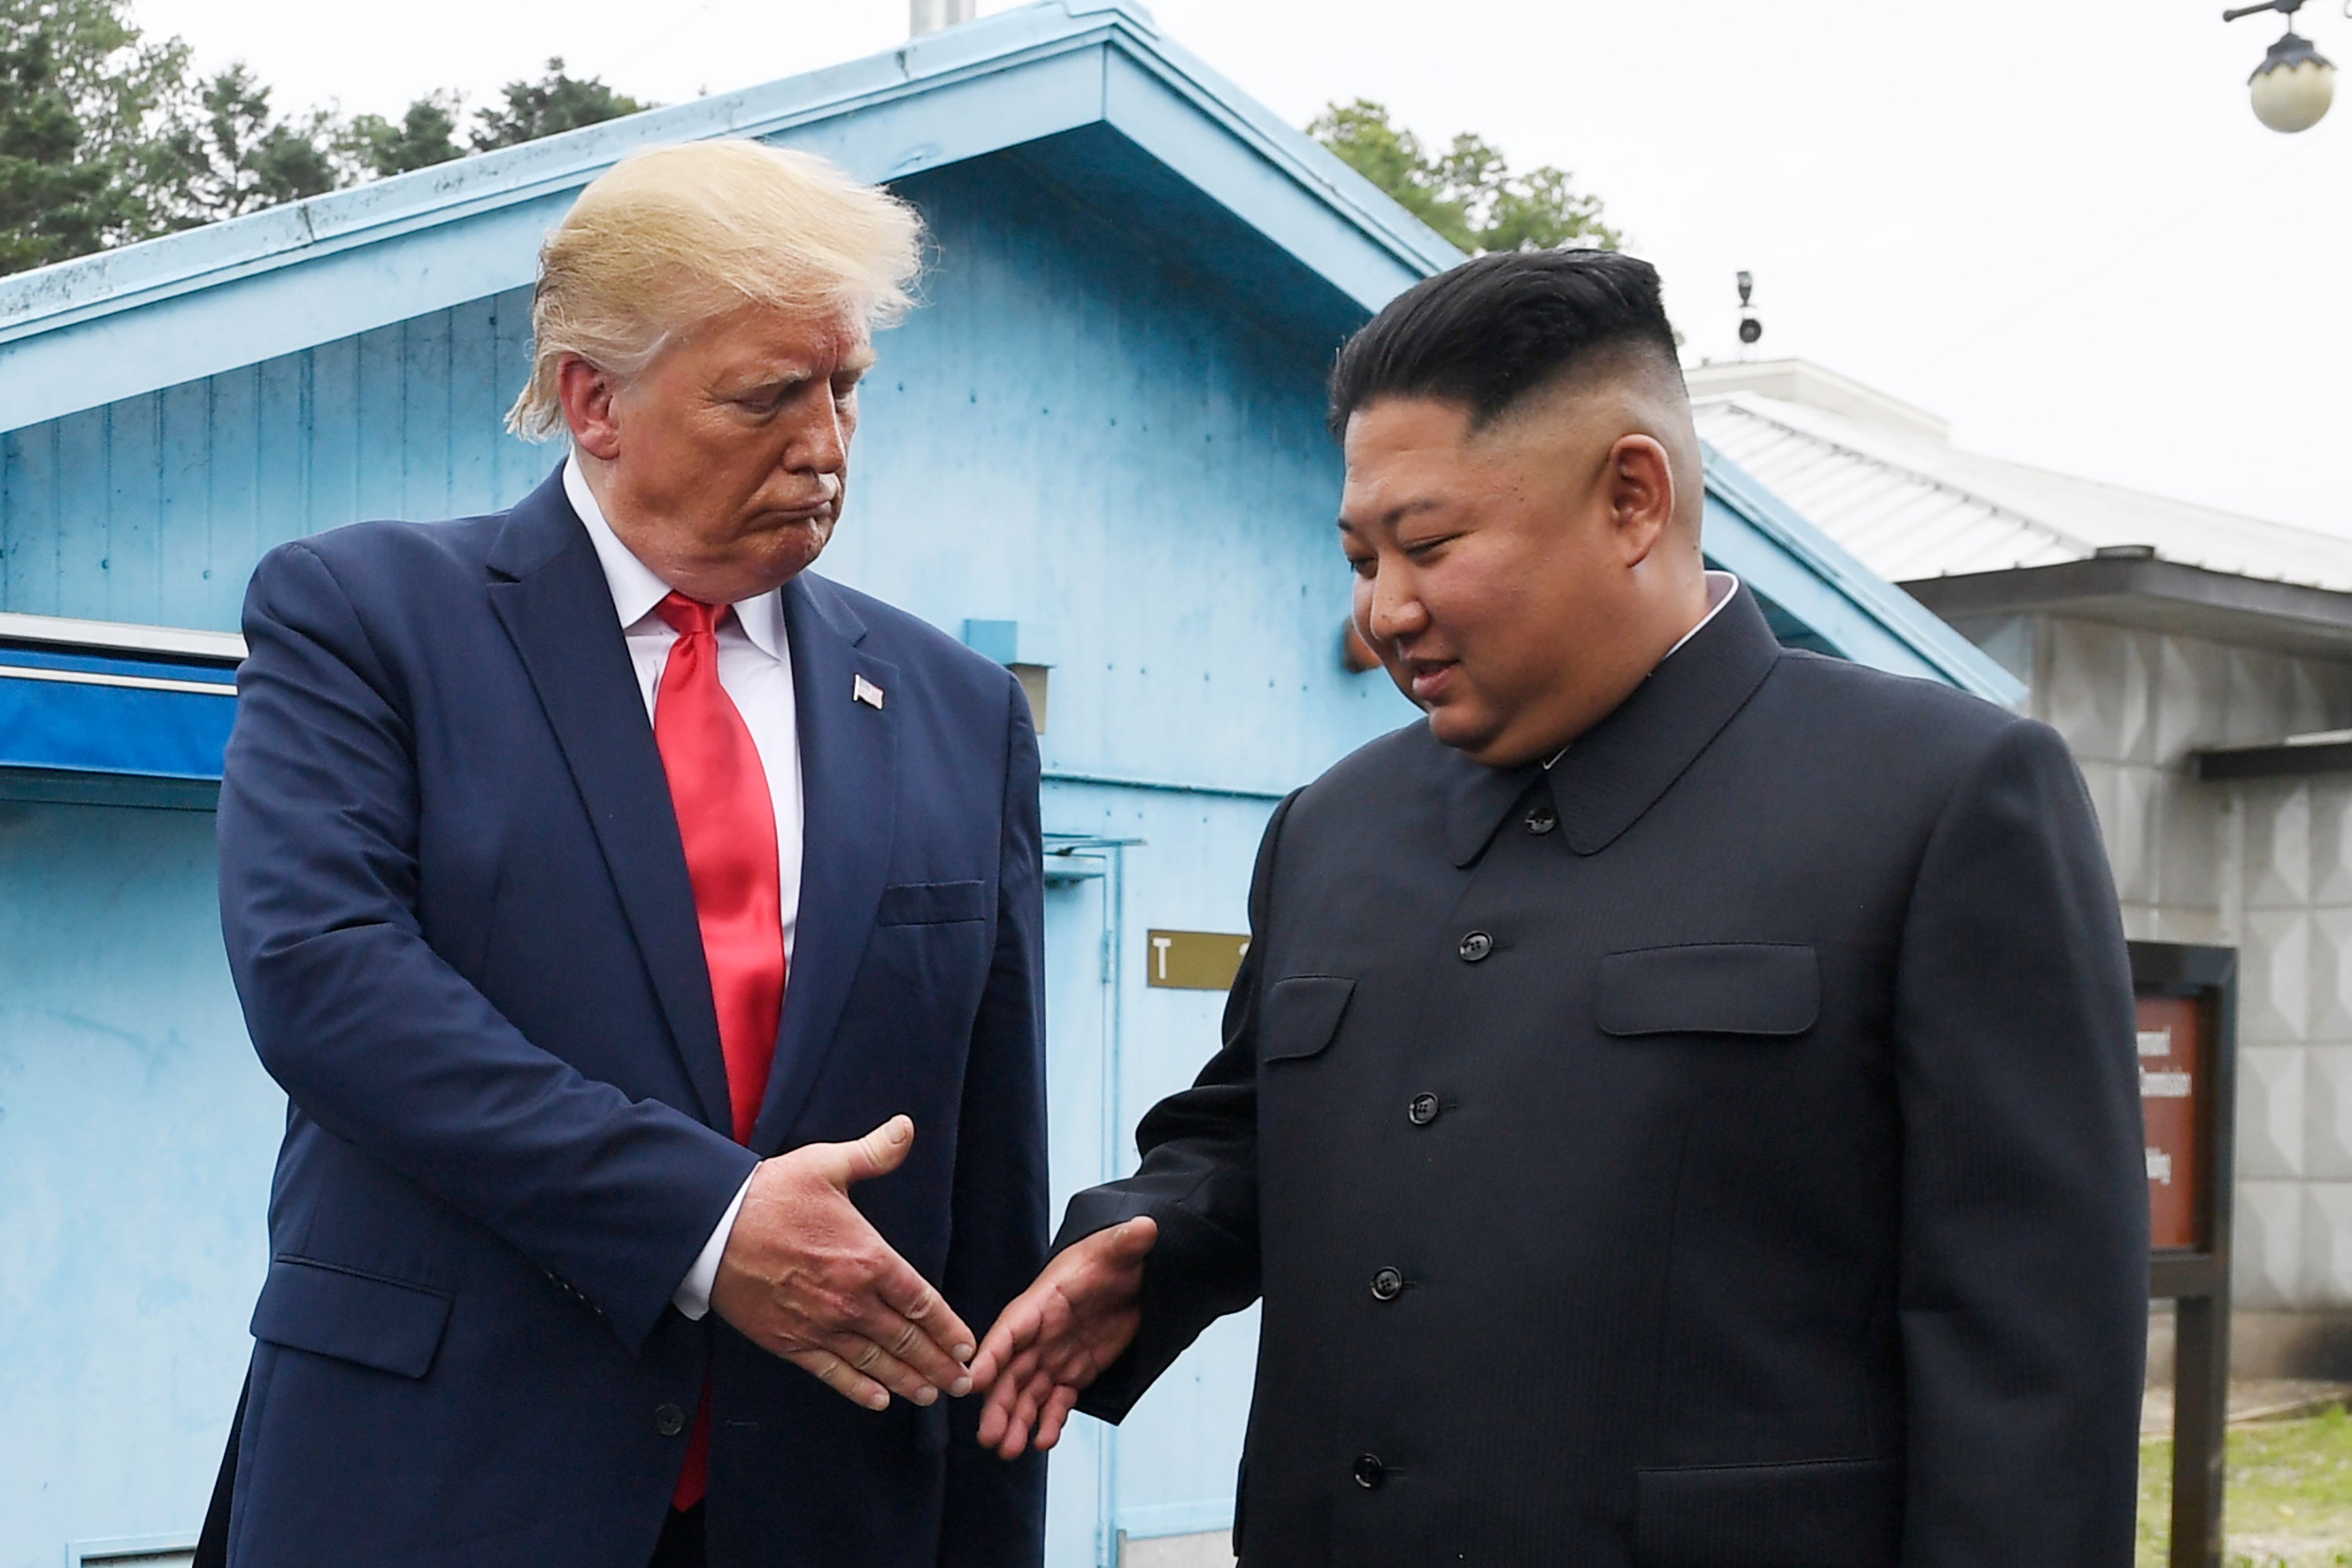 Donald Trump congratulated Kim Jong-un for North Korea’s admission to WHO board